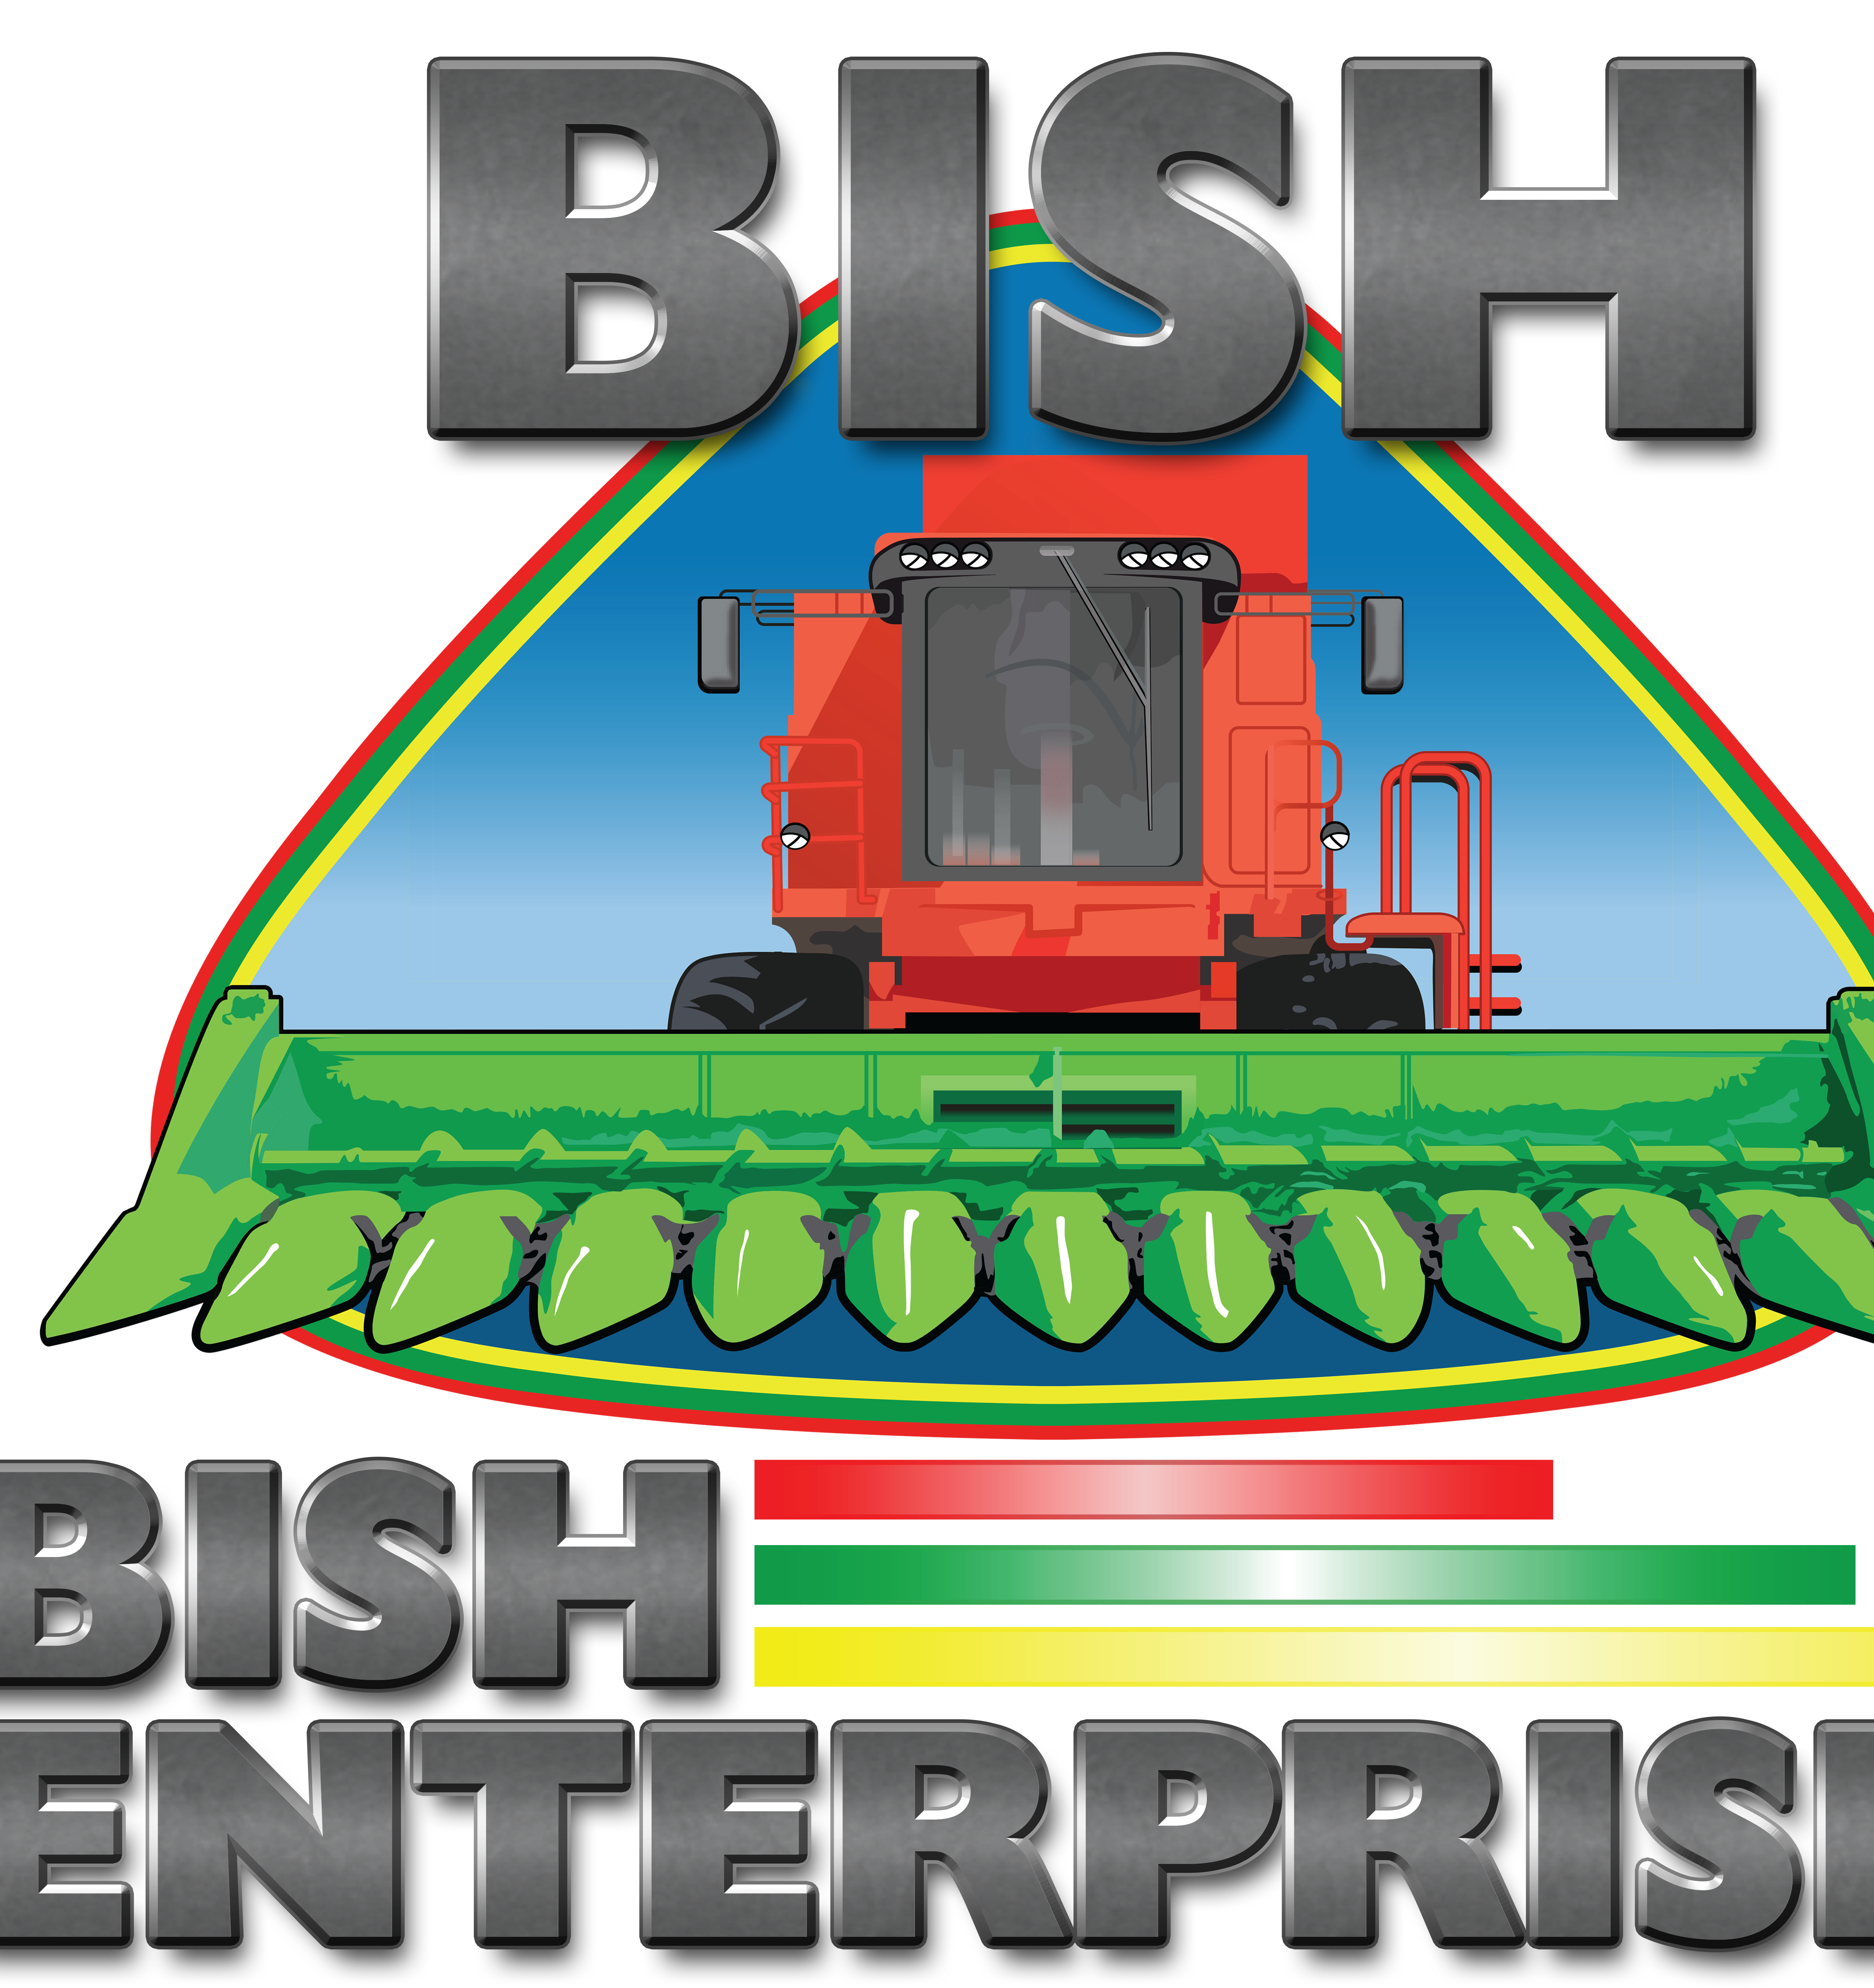 Bish Enterprises - Branding Guidelines Cropped